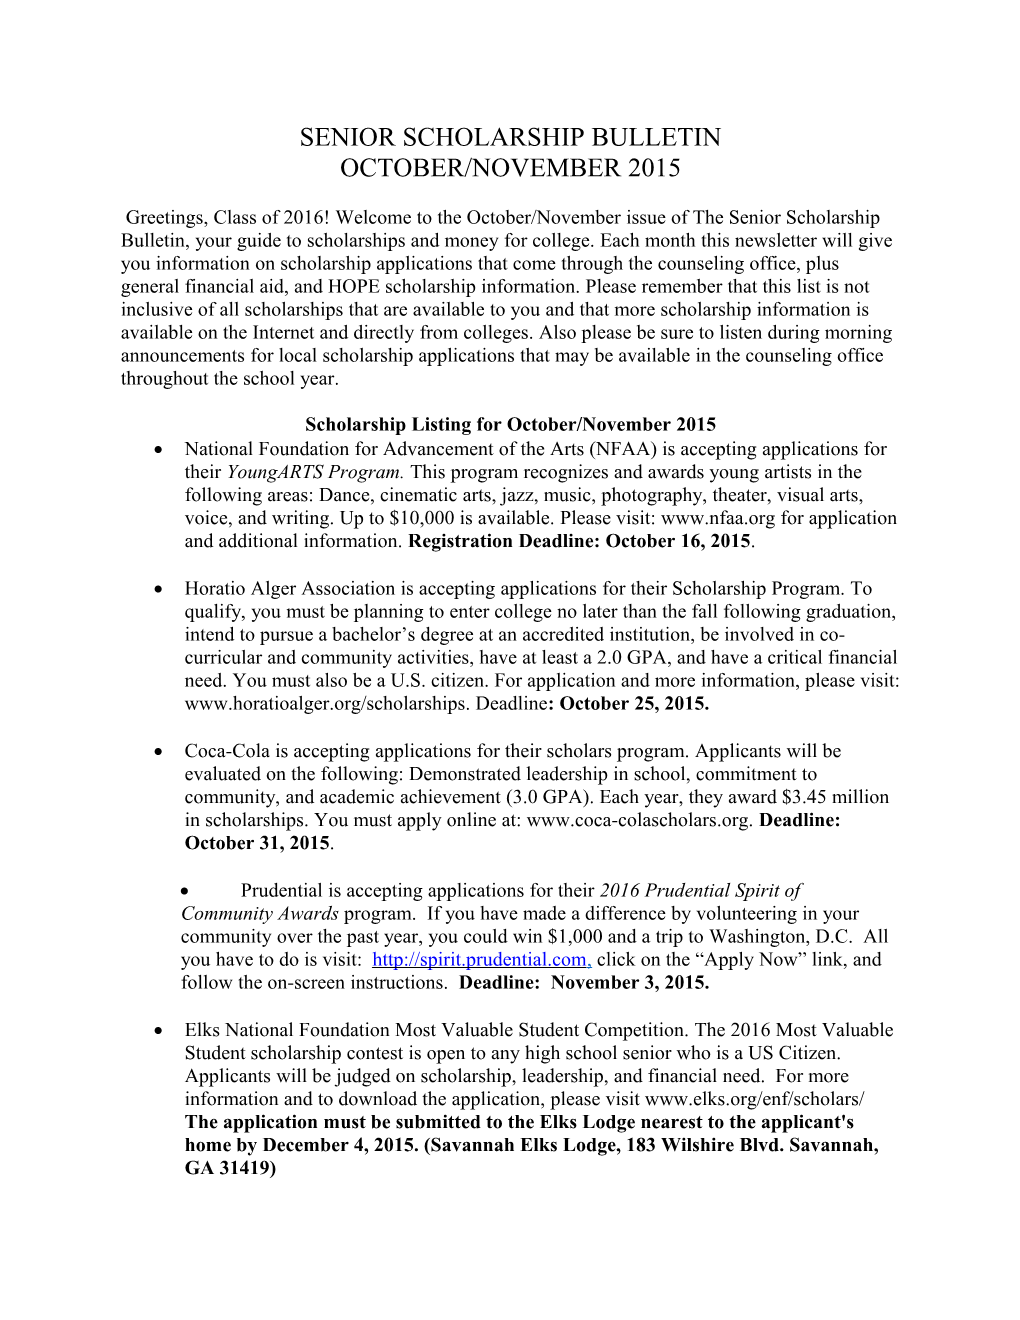 Scholarship Listing for October/November 2015